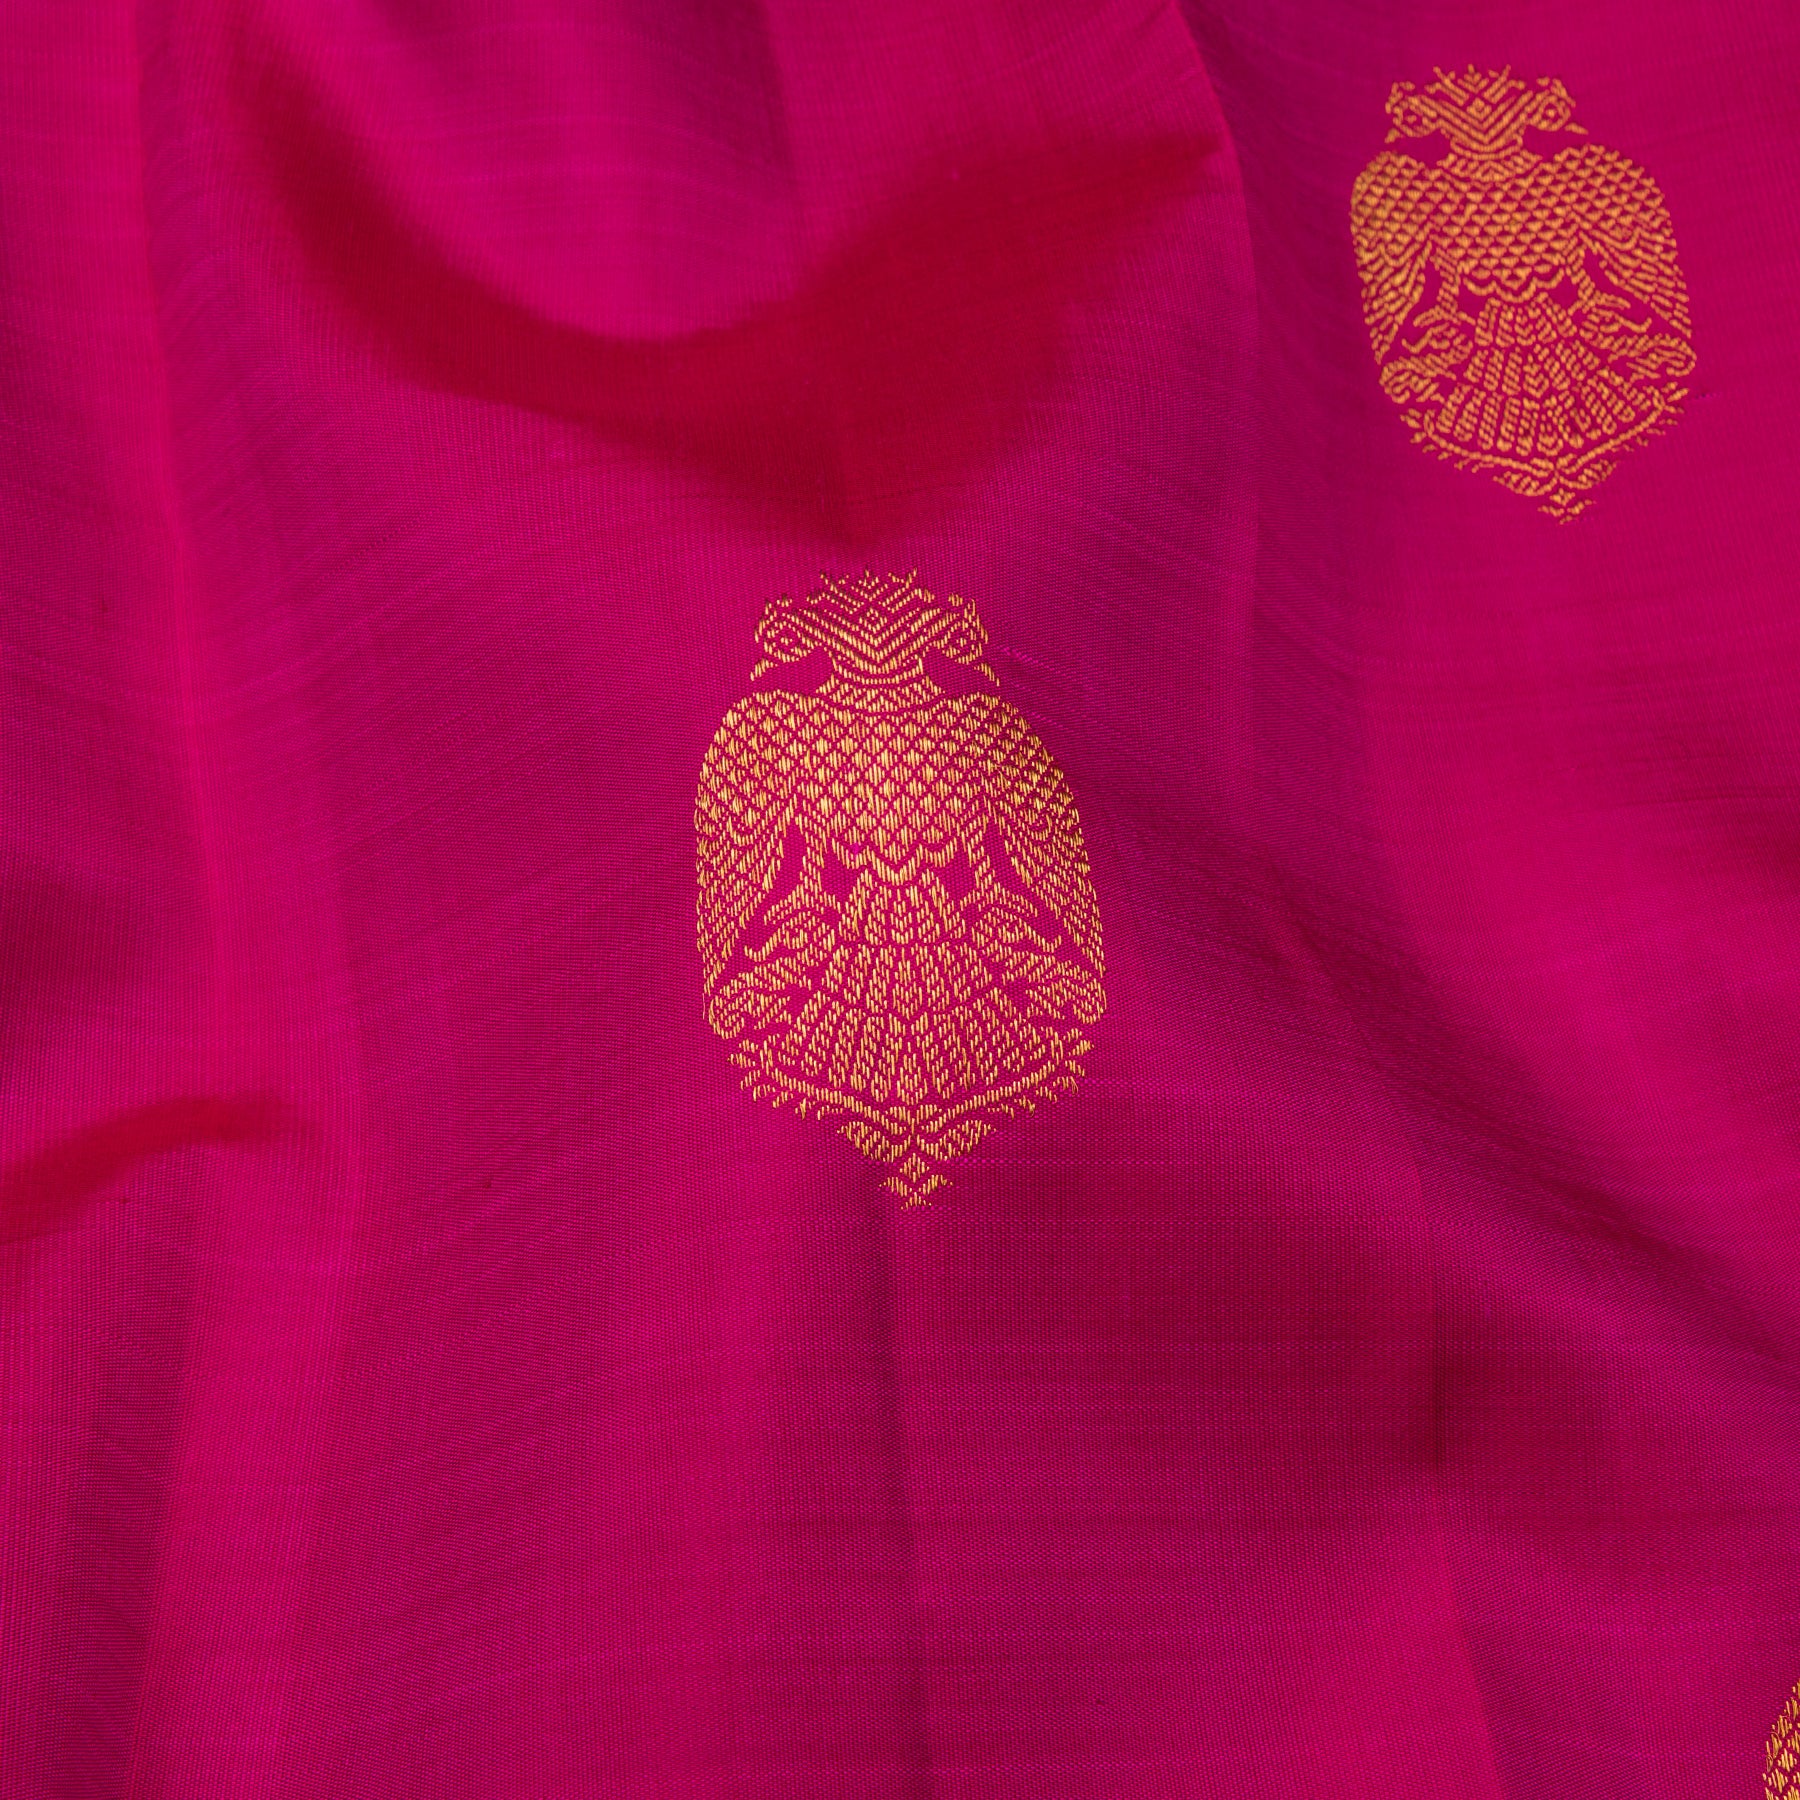 Kanakavalli Kanjivaram Silk Sari 23-595-HS001-13643 - Fabric View